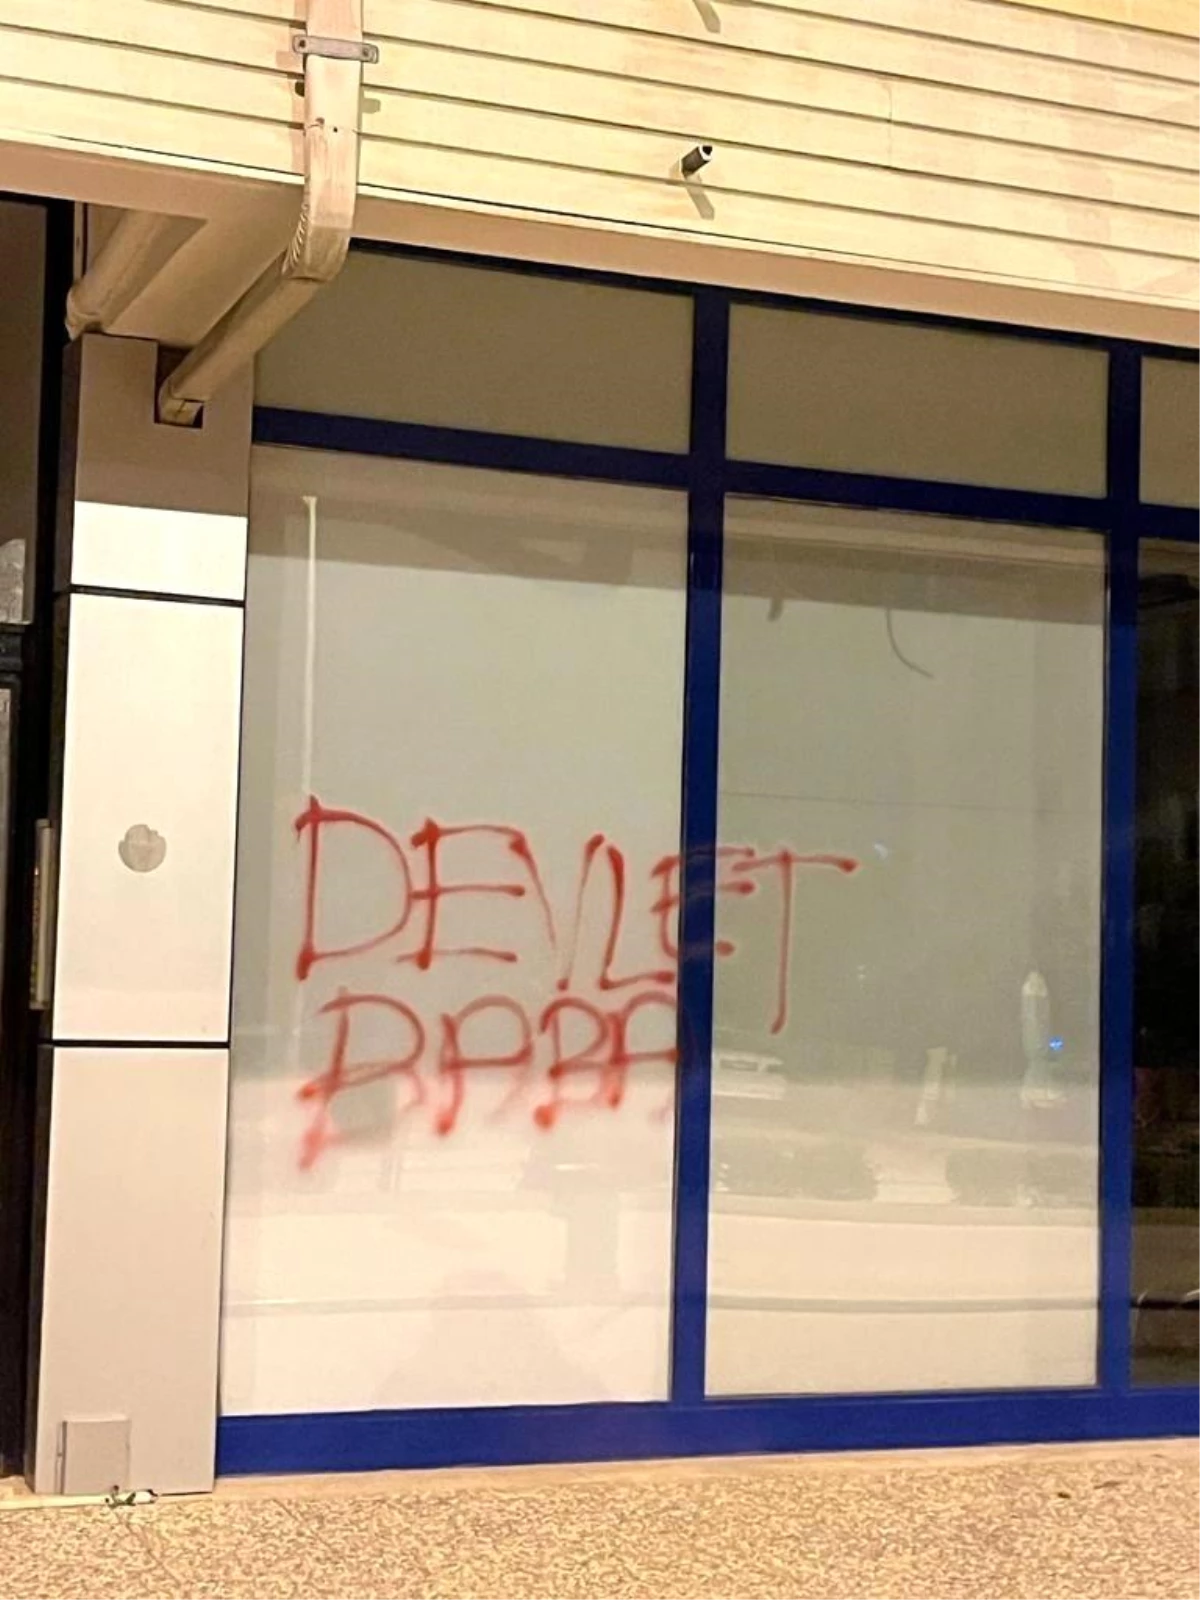 Zincir marketin camını taşla kırıp "Devlet baba" yazdılar